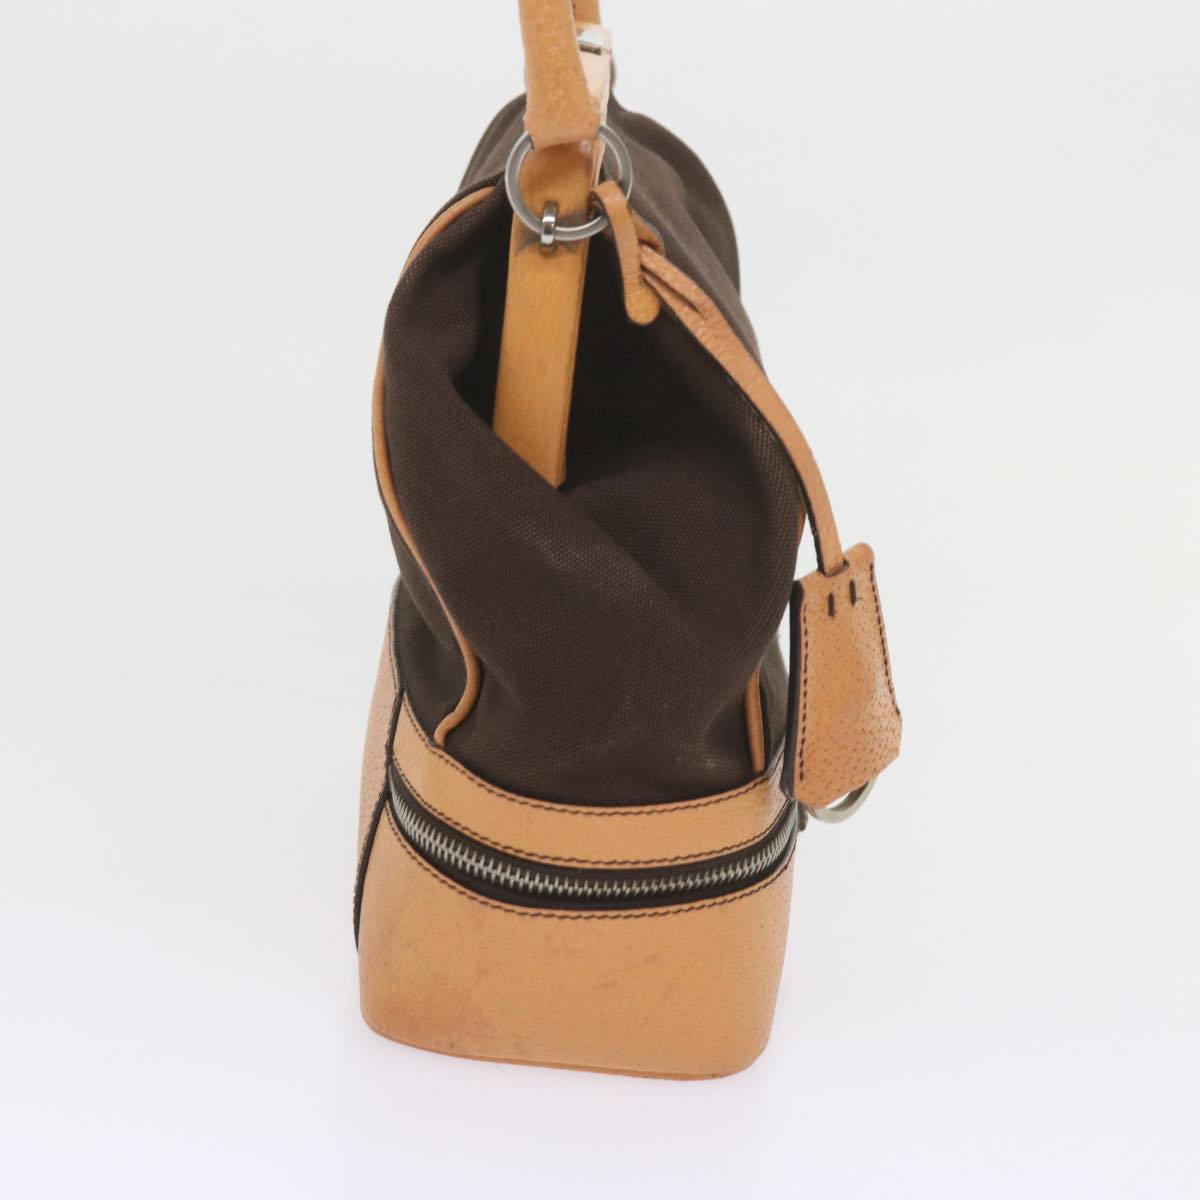 PRADA Hand Bag Canvas Brown Auth 60605